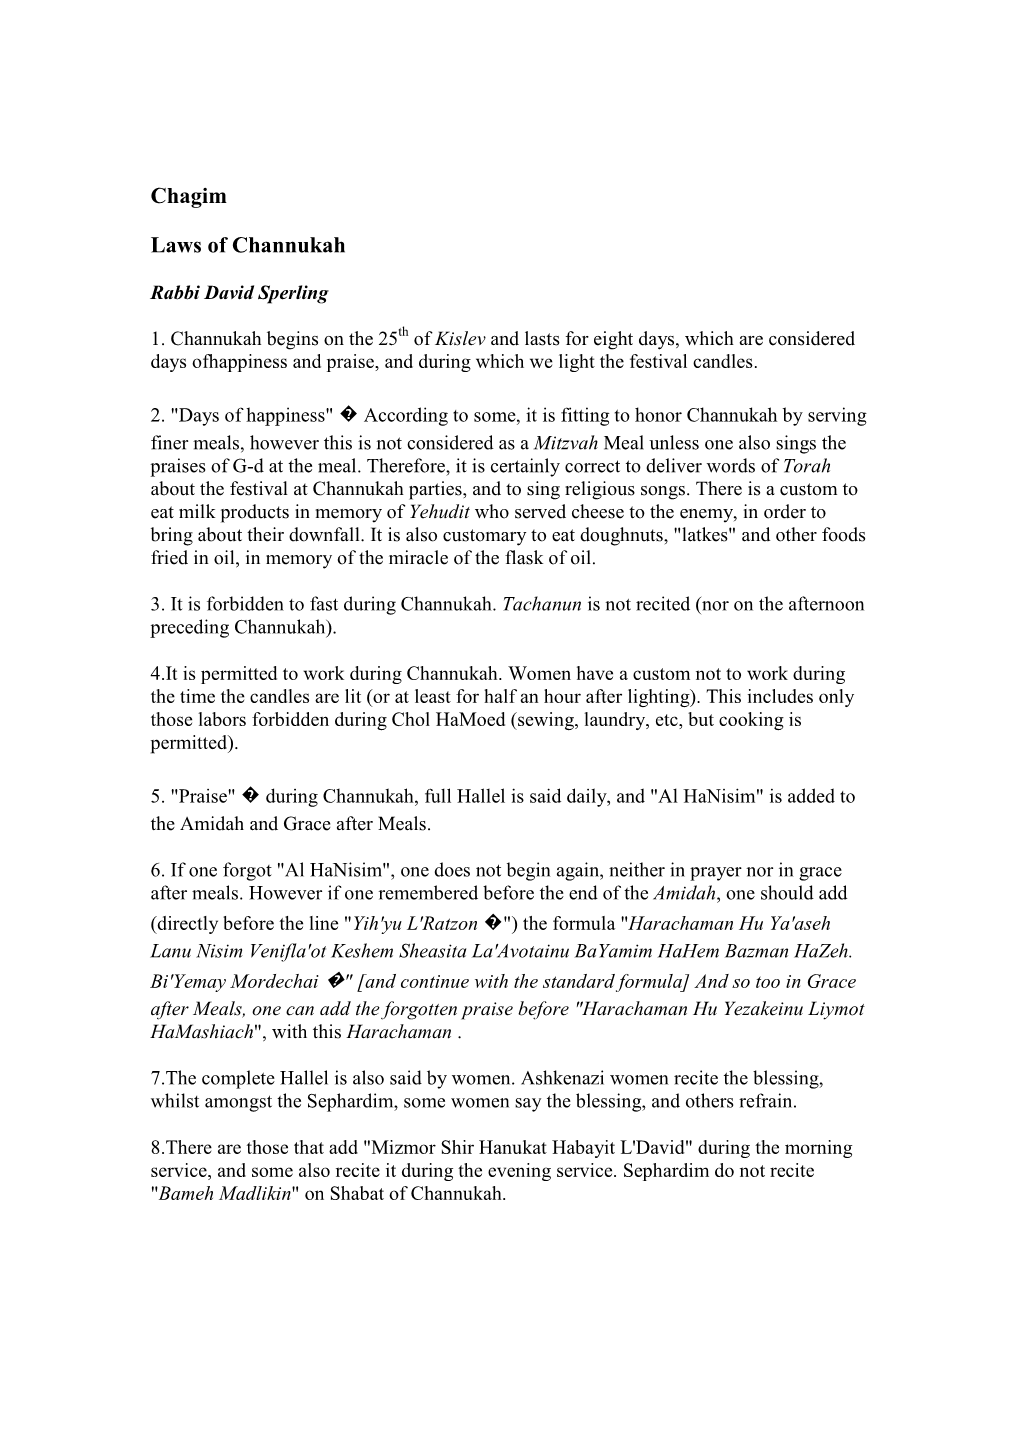 Chagim Laws of Channukah